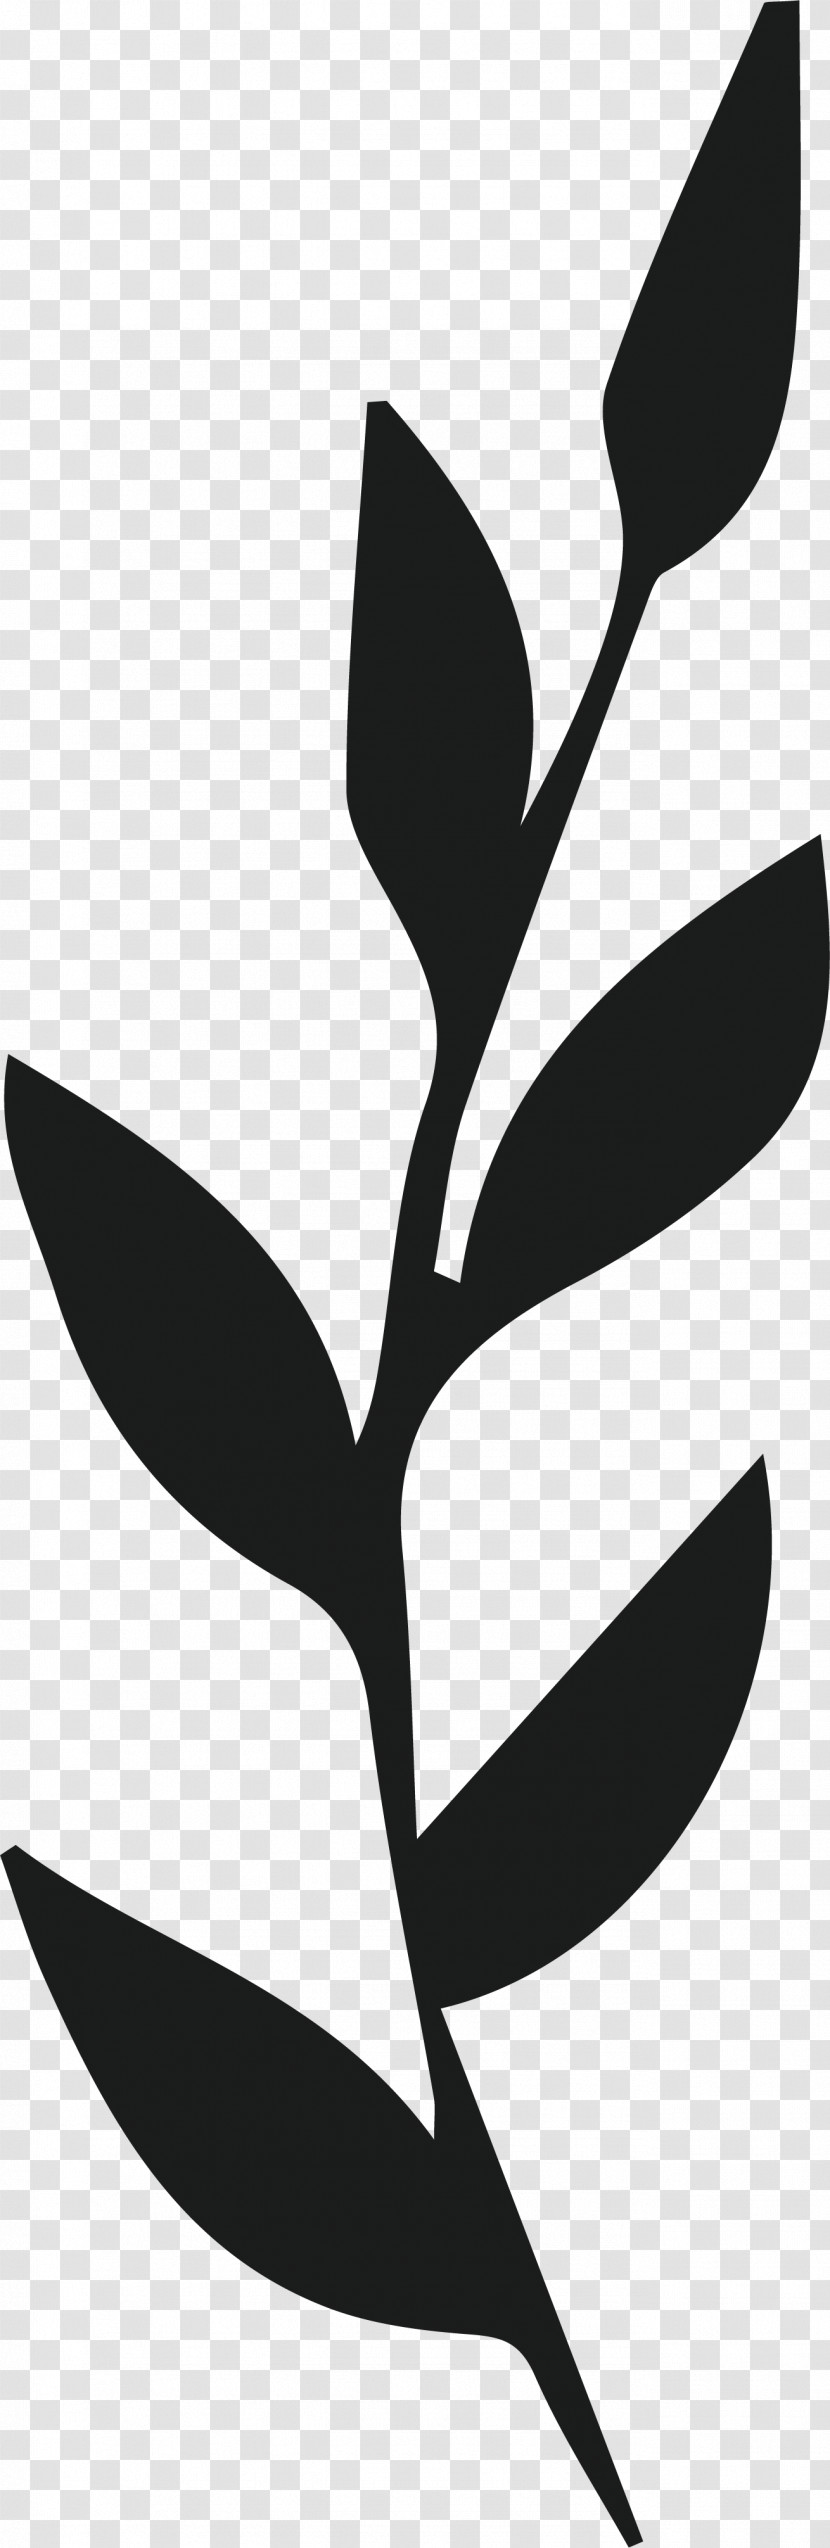 Plant Stem Petal Leaf Line Flower Transparent PNG